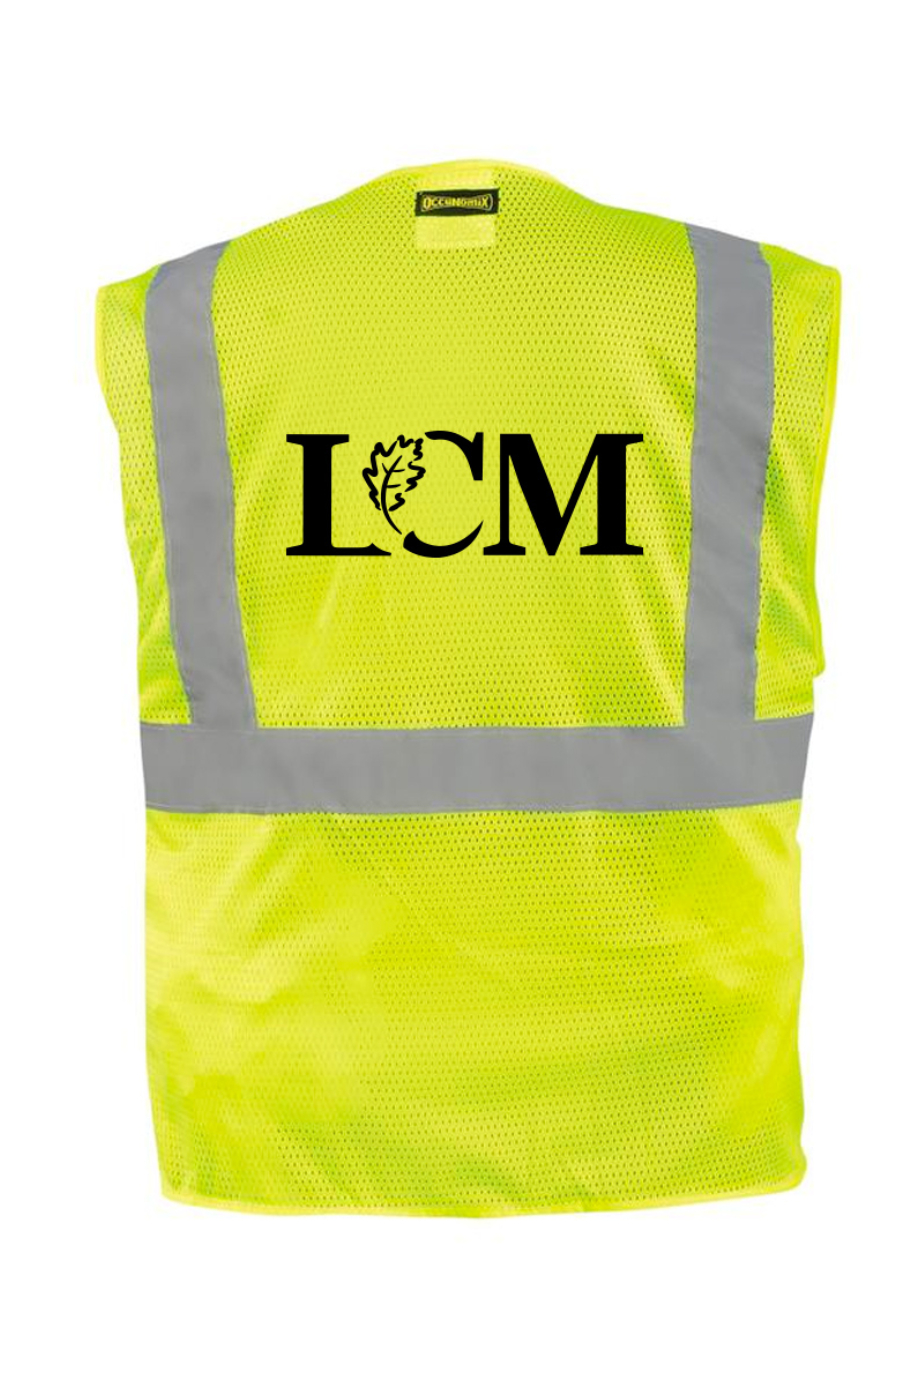 LCM Safety Vests No Badge Pocket